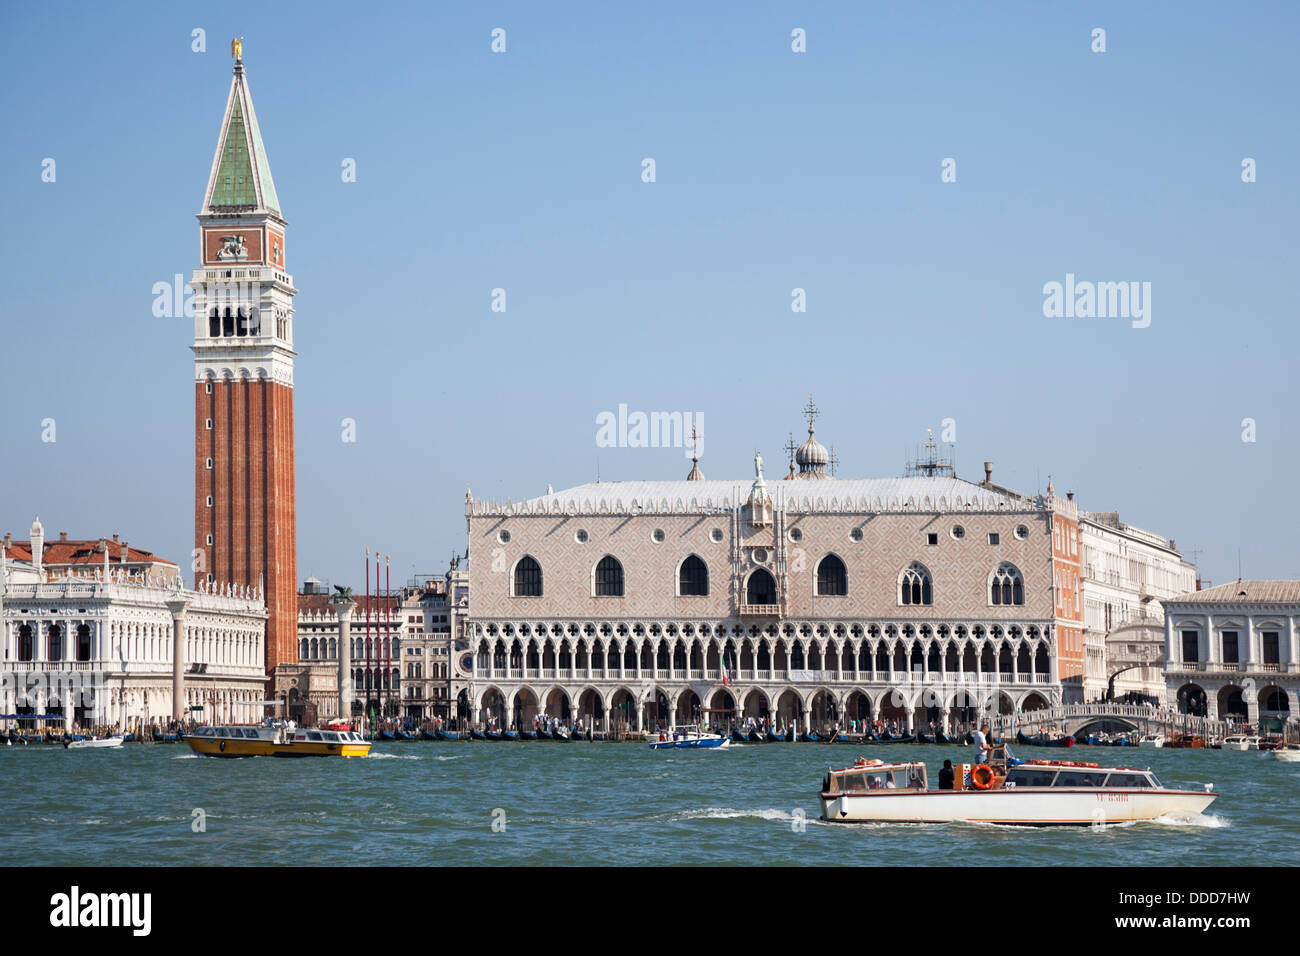 À Venise, la Place Saint Marc, le palais des Doges et une partie de la lagune. A Venise, la place St Marc, le palais des Doges. Banque D'Images